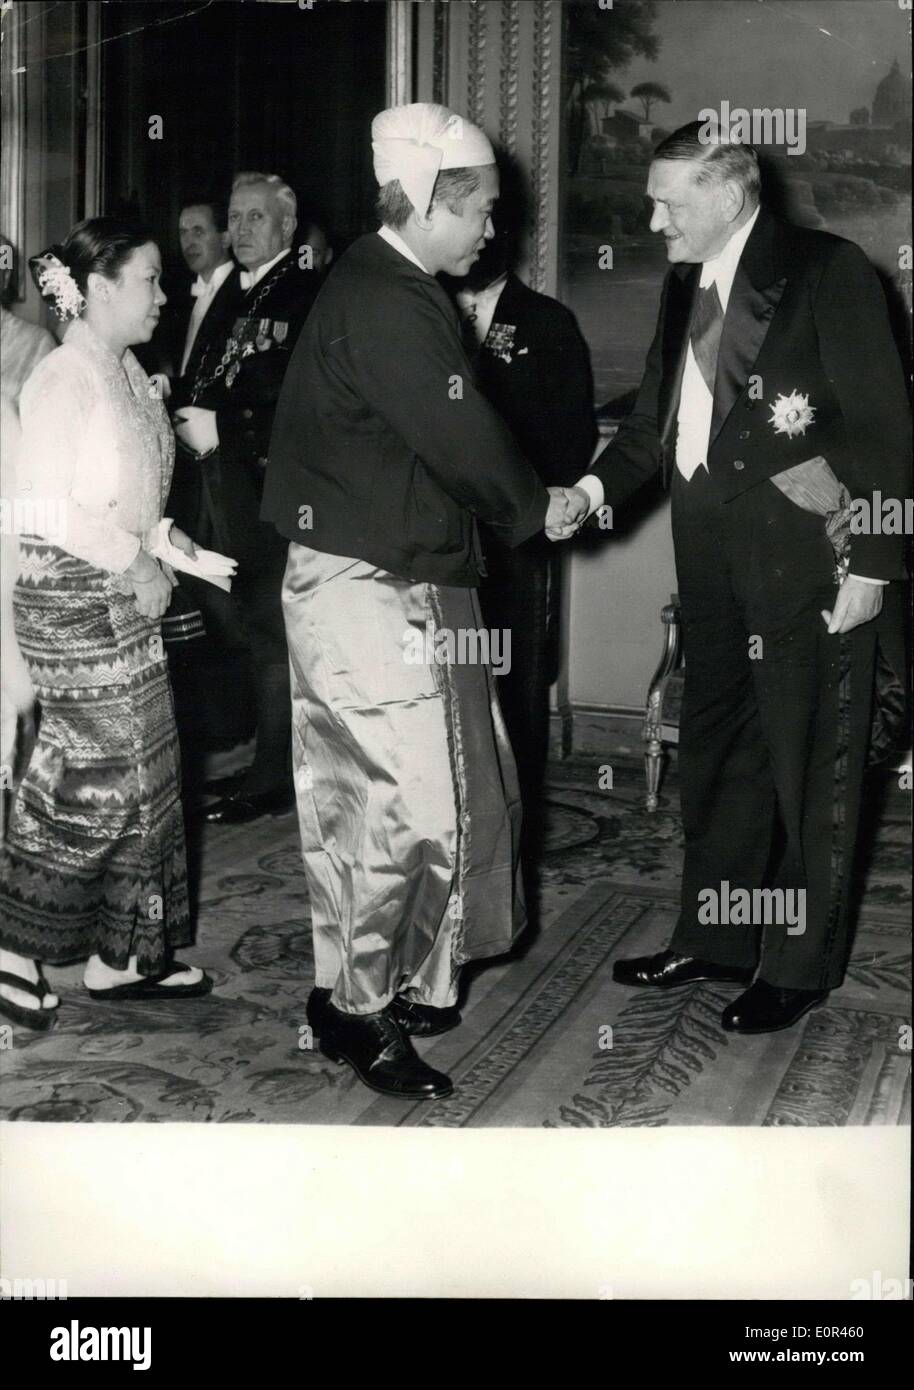 24 janvier 1958 - Les membres du corps diplomatique ont reçu au Palais de l'Élysée. OPS : président Coty accueille un membre de l'ambassade de Birmanie à Paris au cours de la réception à l'Elysée hier soir. Banque D'Images